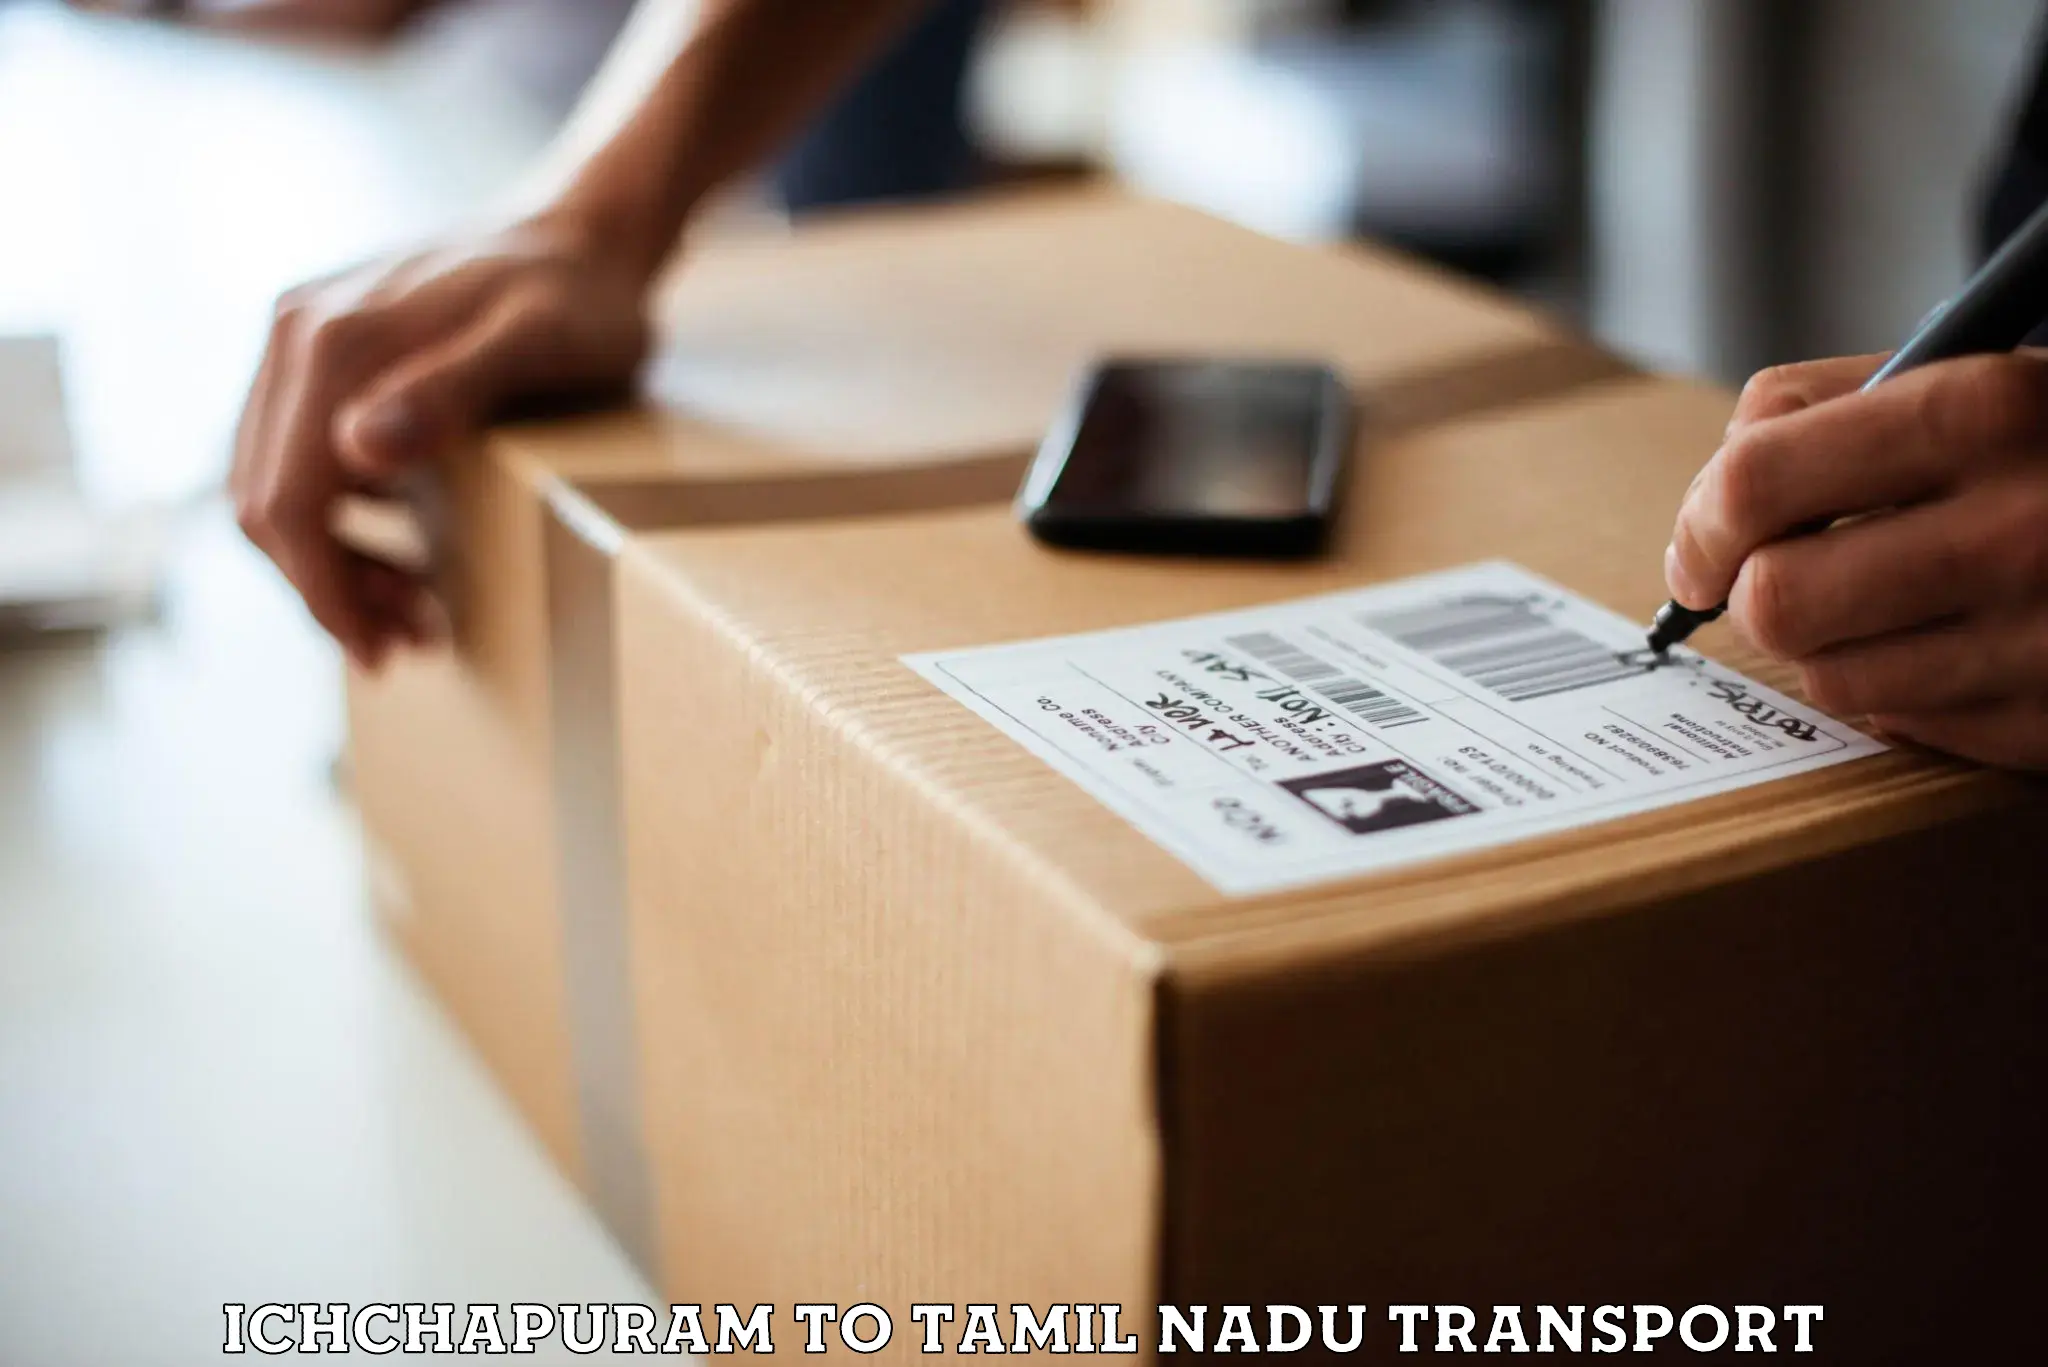 Daily parcel service transport Ichchapuram to Tamil Nadu